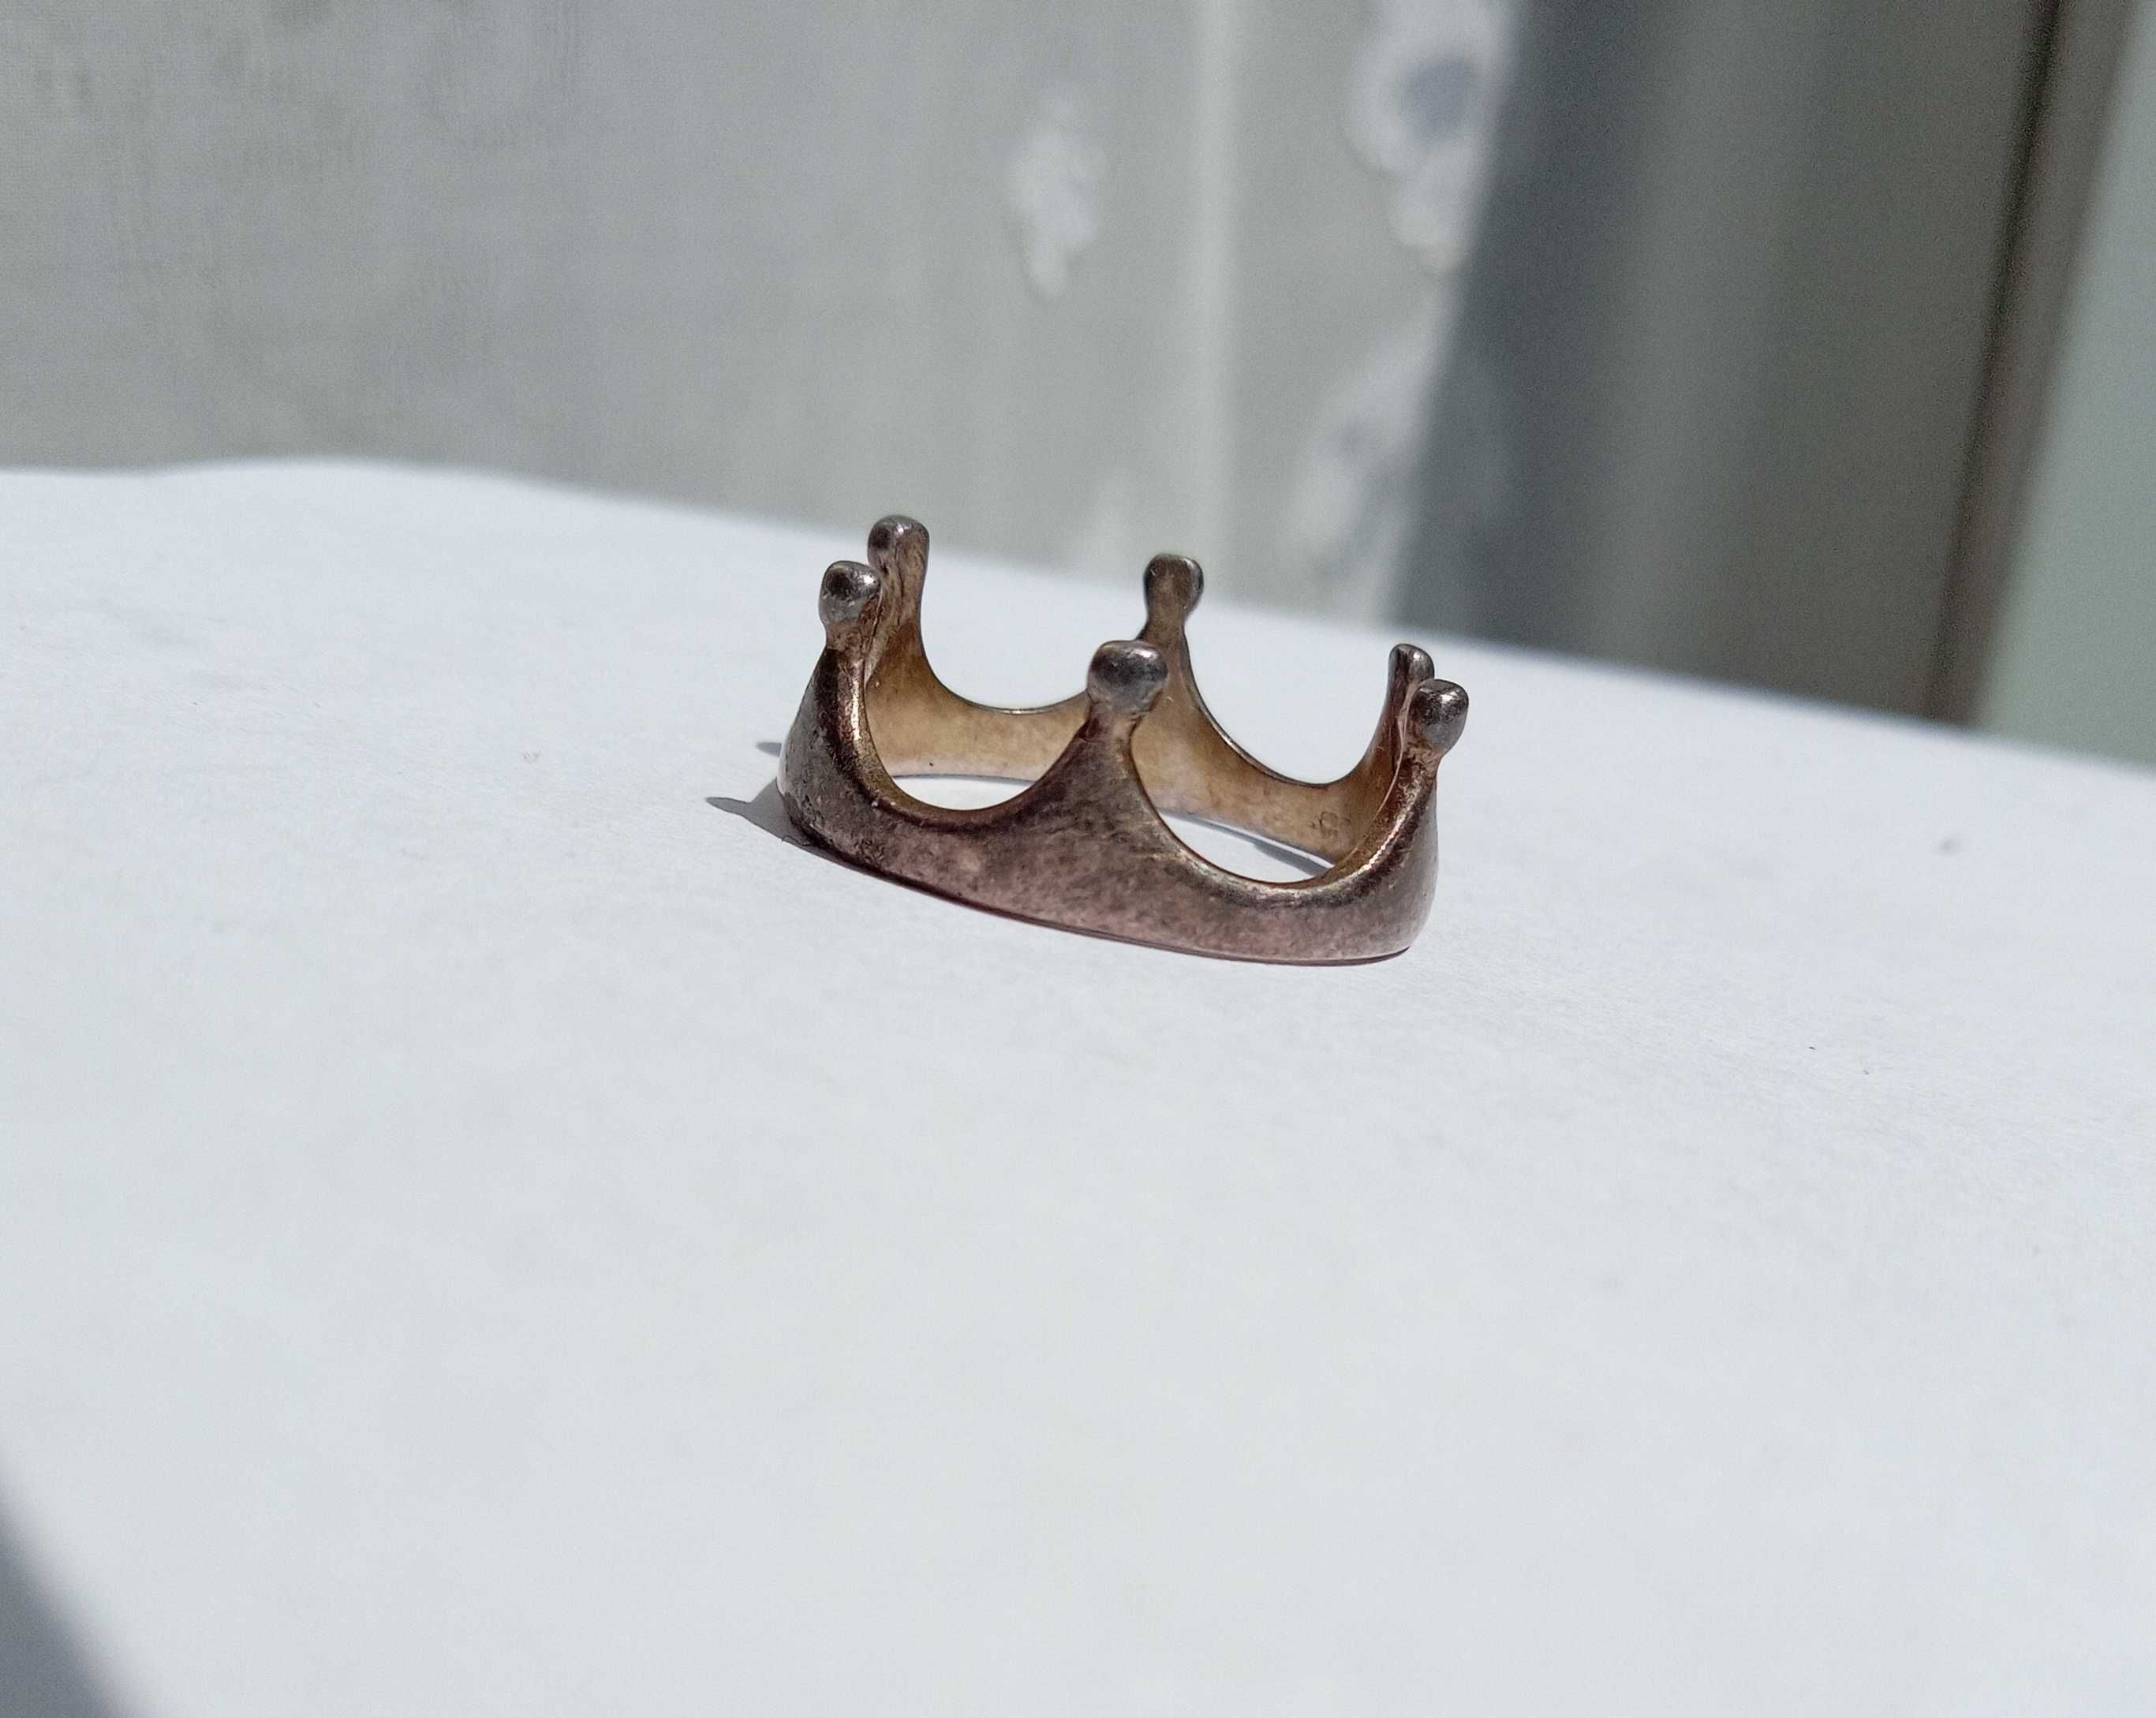 Каблучка кольцо колечко  "Корона" Срібло 925 проба, Розмір 17,2